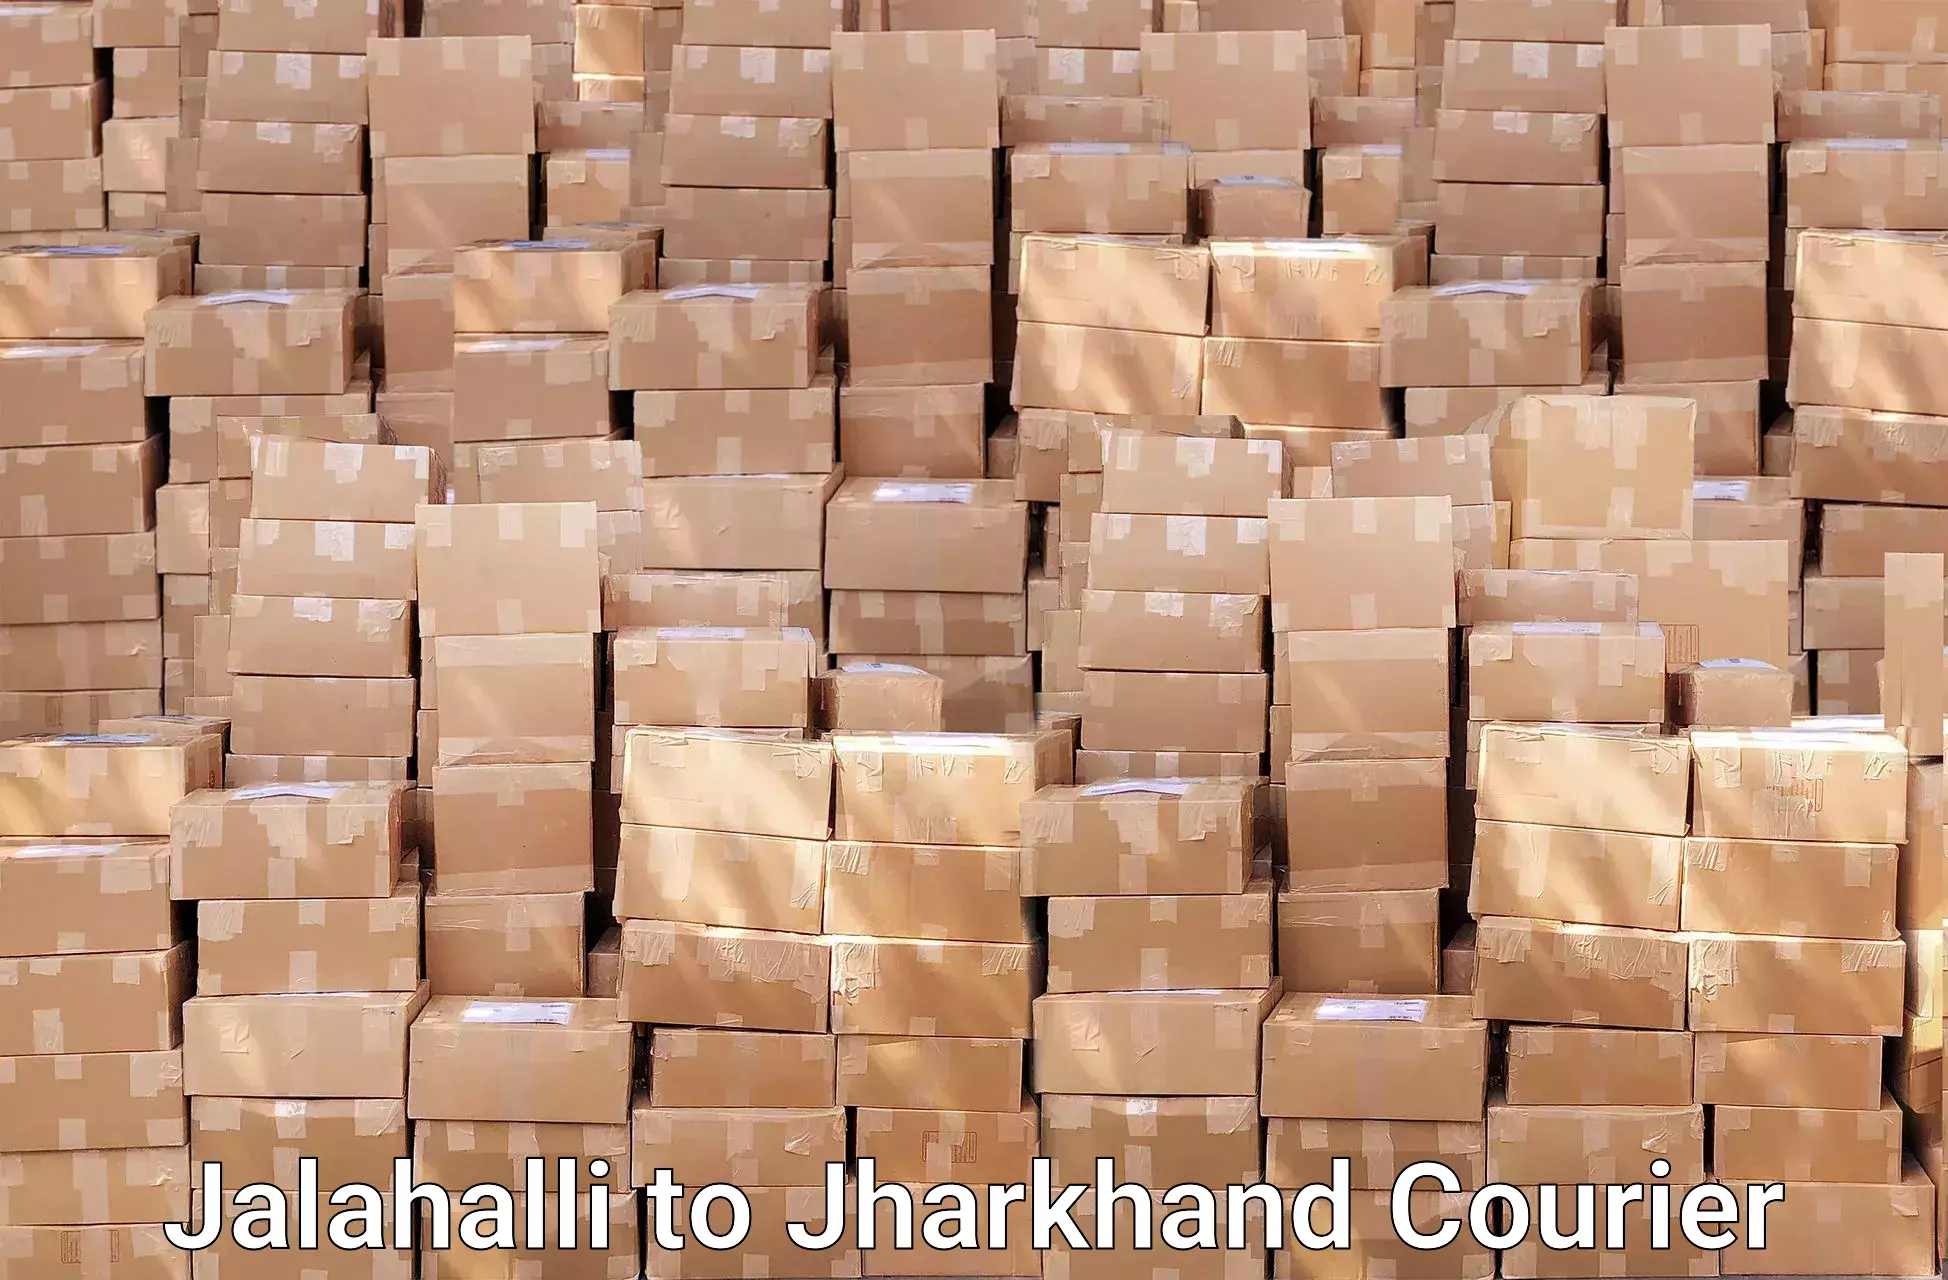 Trusted furniture movers Jalahalli to East Singhbhum